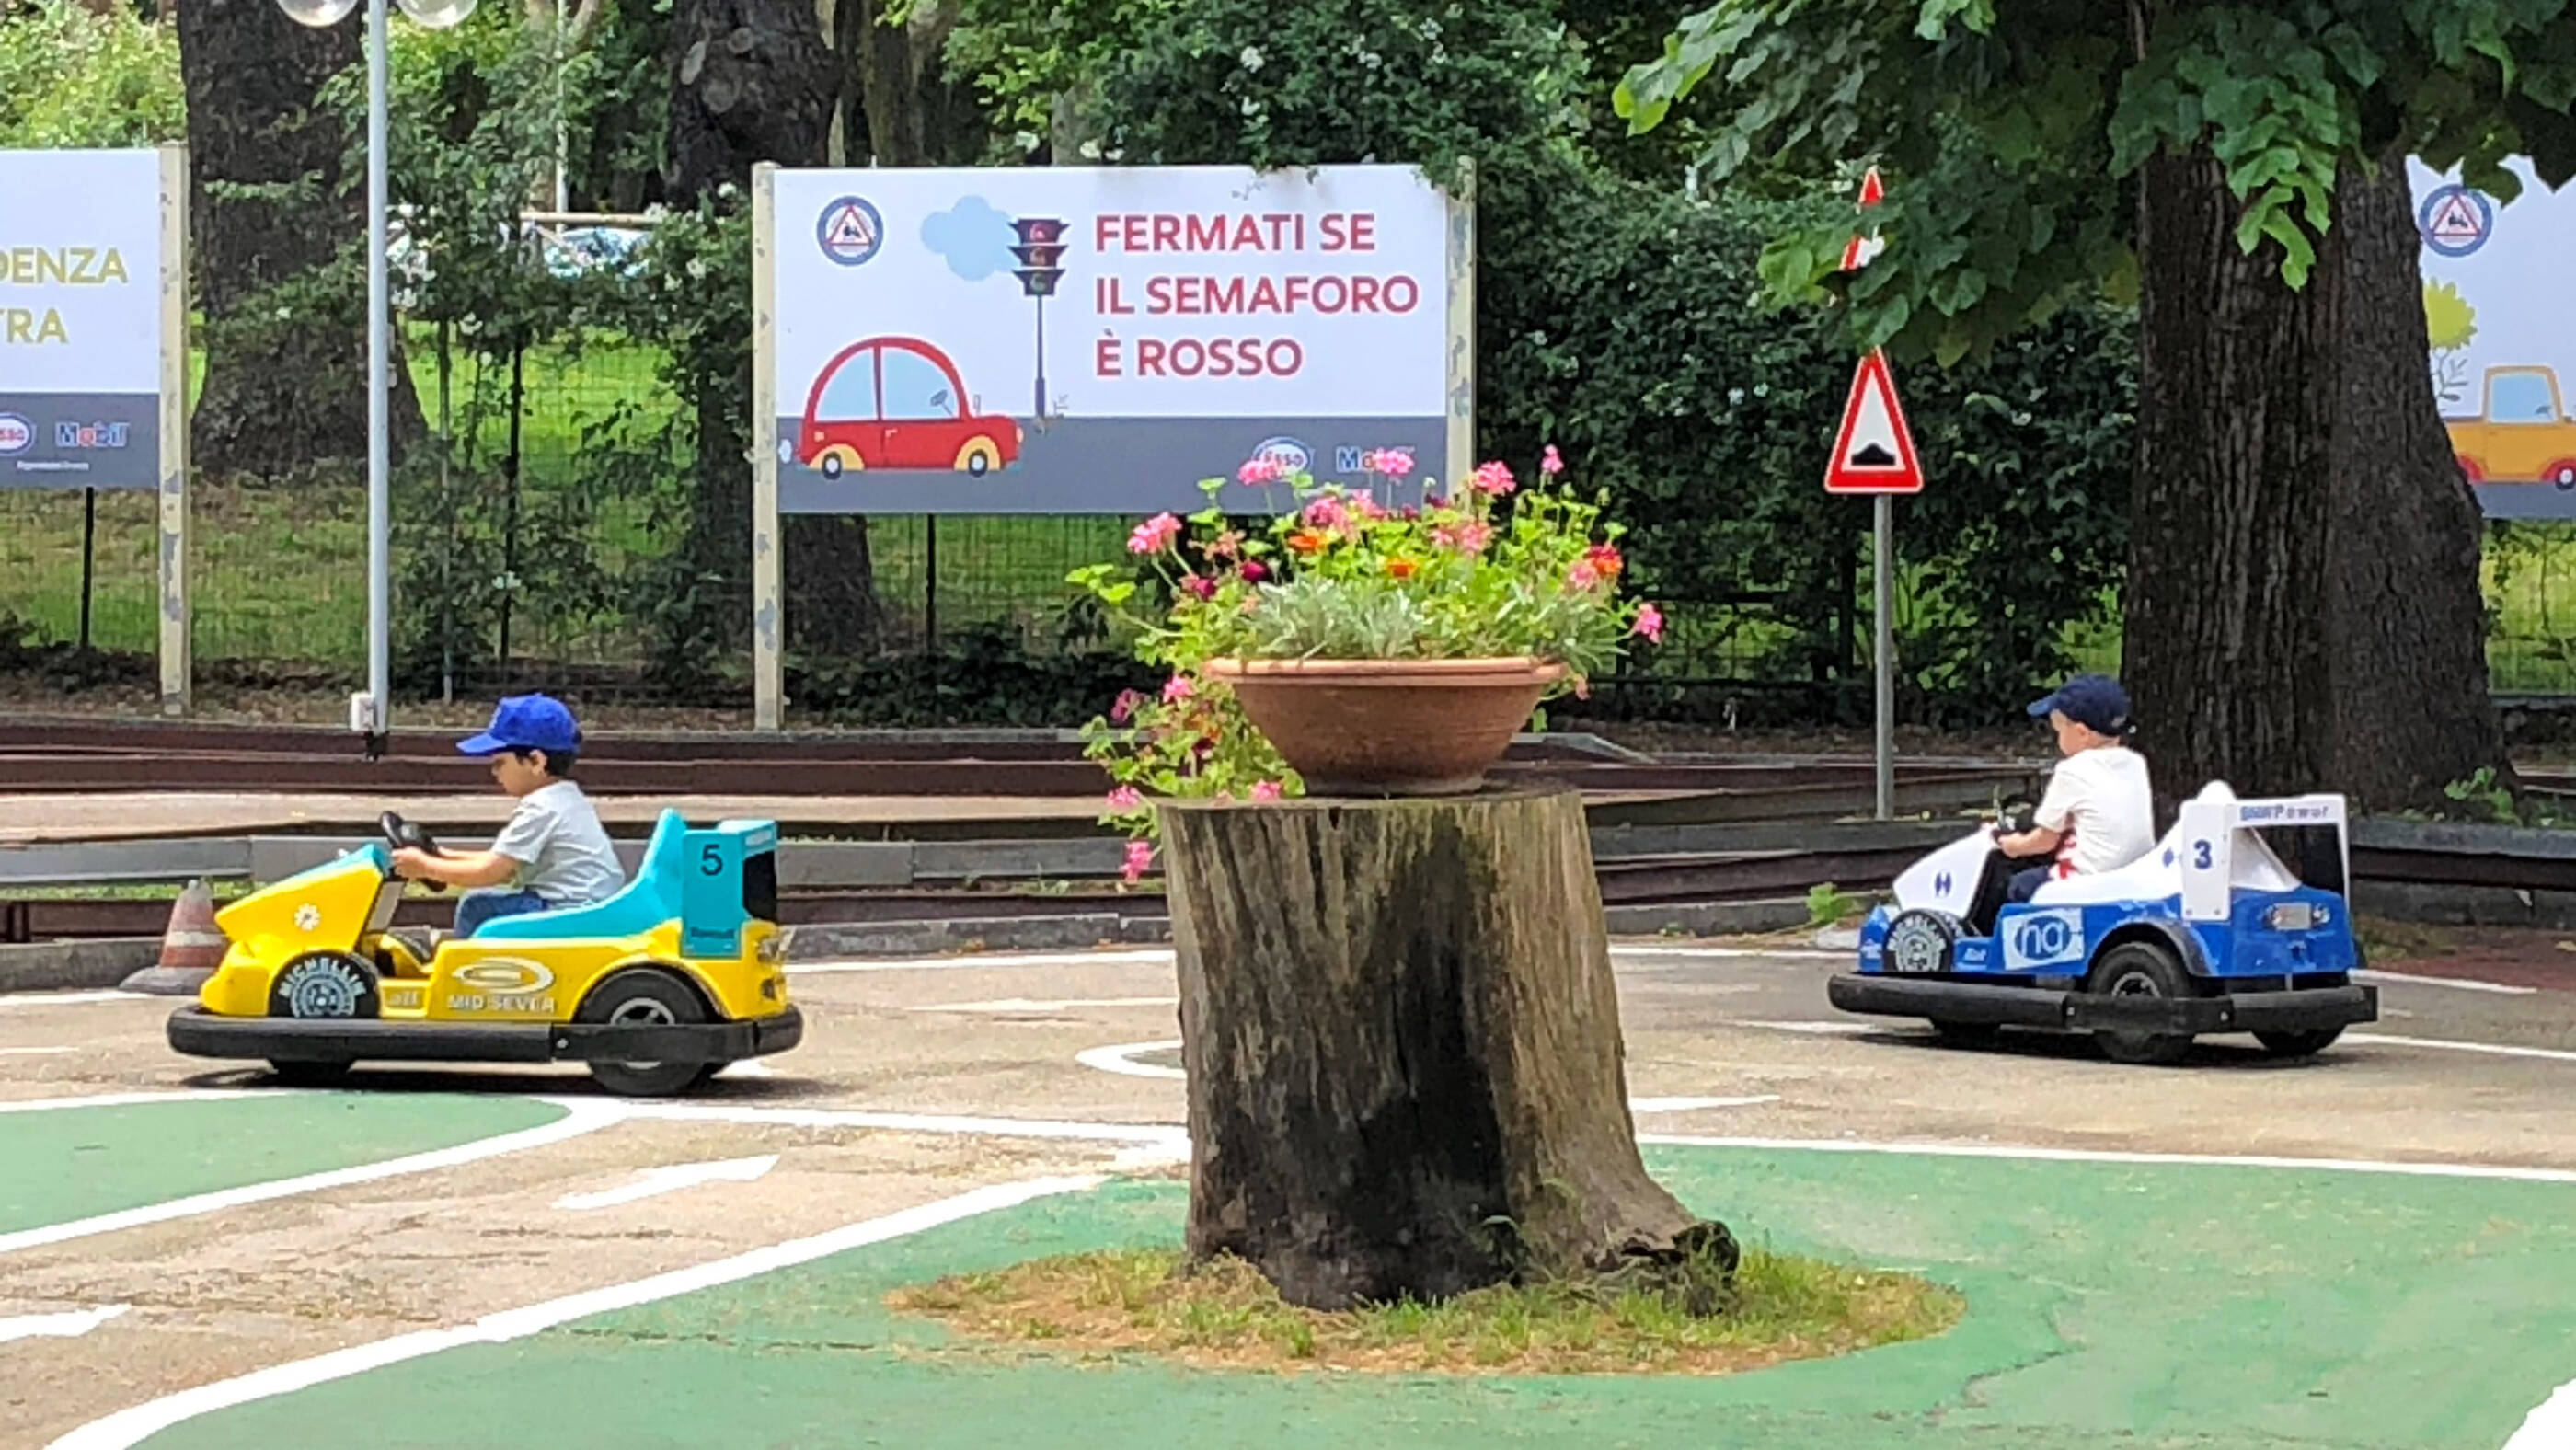 Lezioni pratiche nel percorso didattico del Parco Scuola che, realizzato in scala, simula un vero e proprio itineraio urbano.